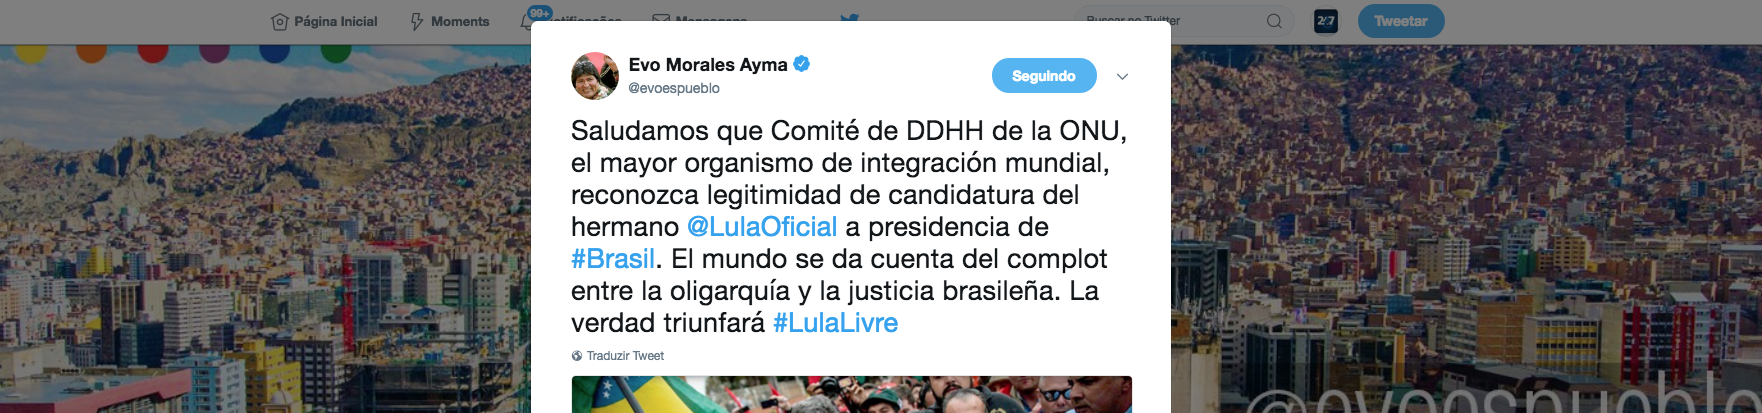 Morales celebra decisão da ONU e diz que mundo já vê complô contra Lula